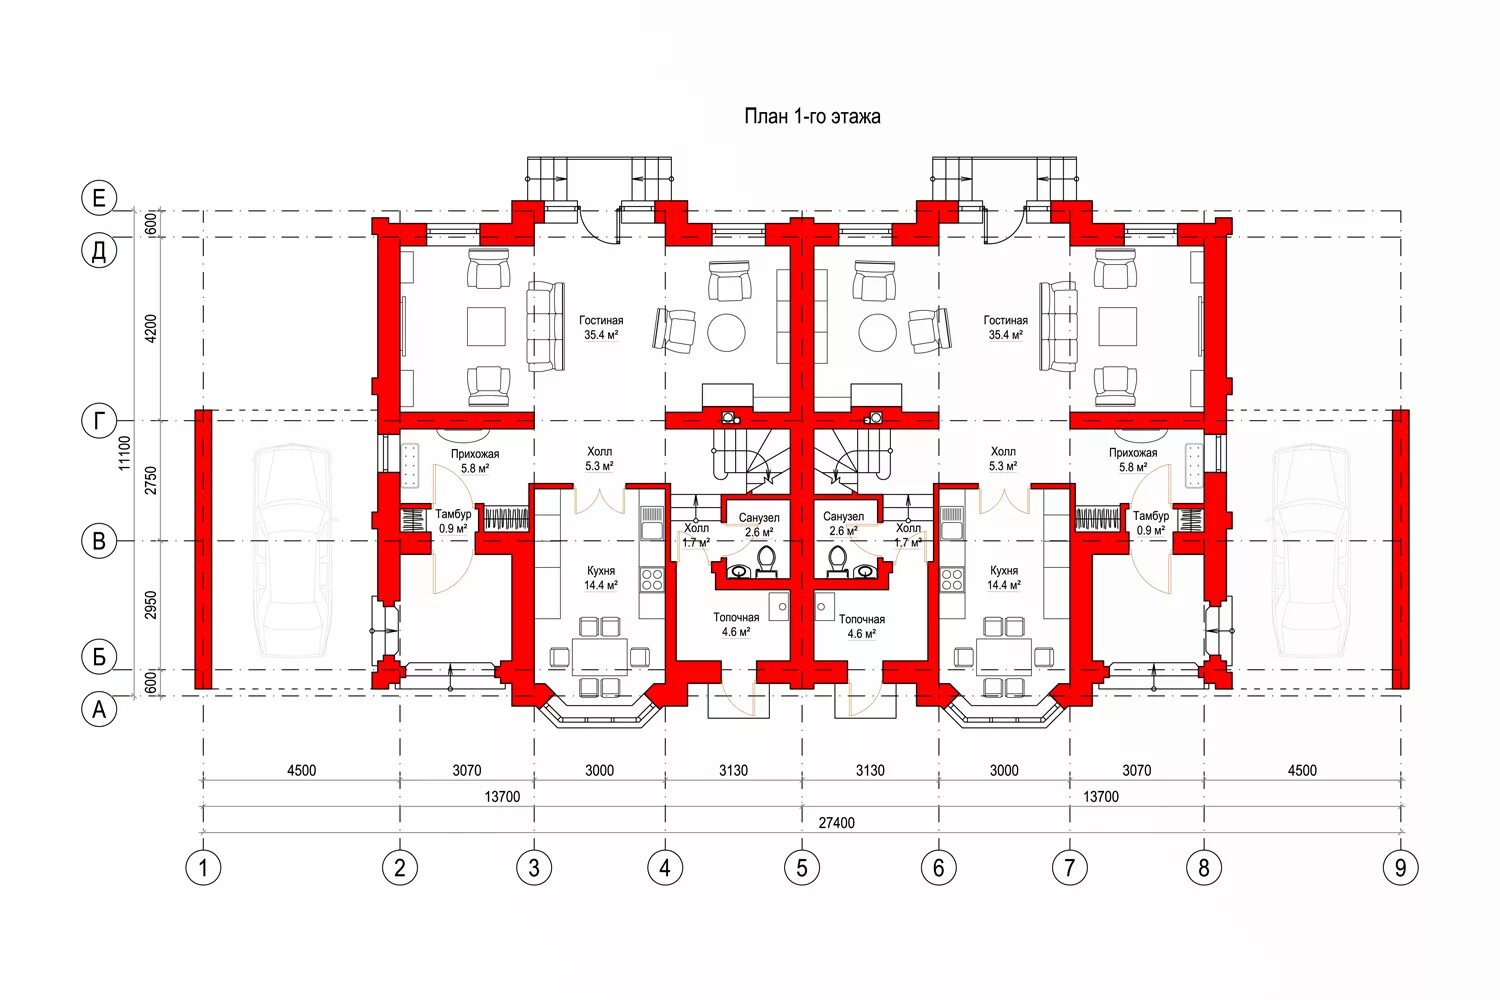 Уровень 1 этажа. Планировка 1 этажа многоэтажного жилого дома. Дуплекс 2-х этажный планировки. План первого этажа. План 1 этажа жилого здания.